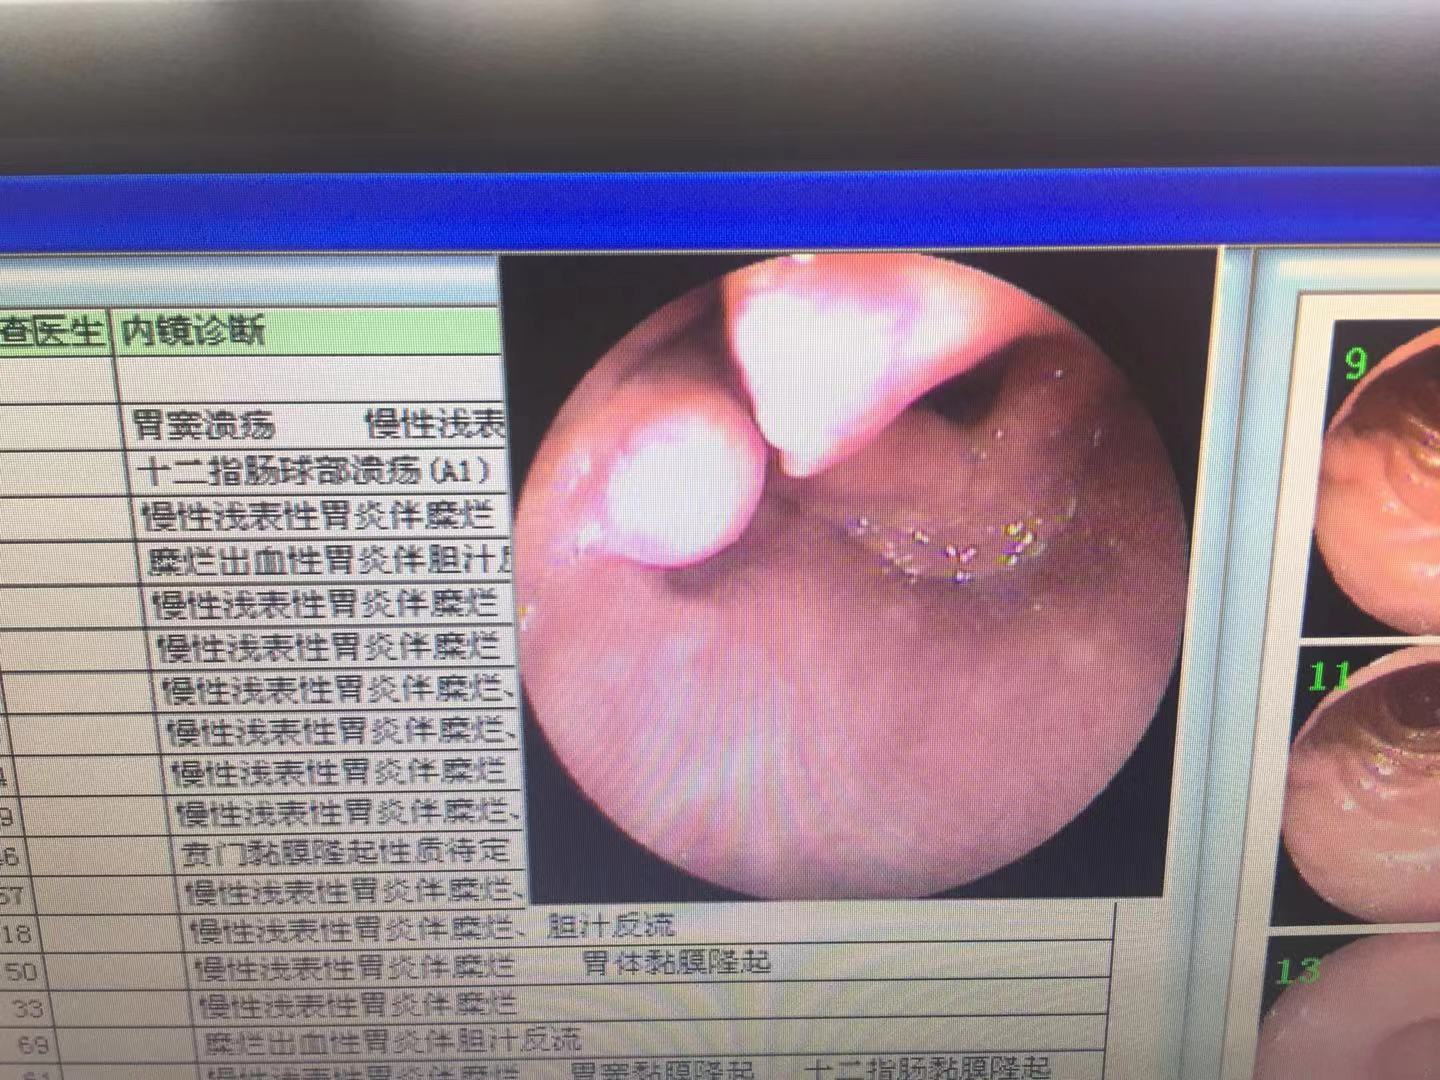 胃镜检查发现喉咙中有一肿块,外表清楚光滑,3年前胃镜